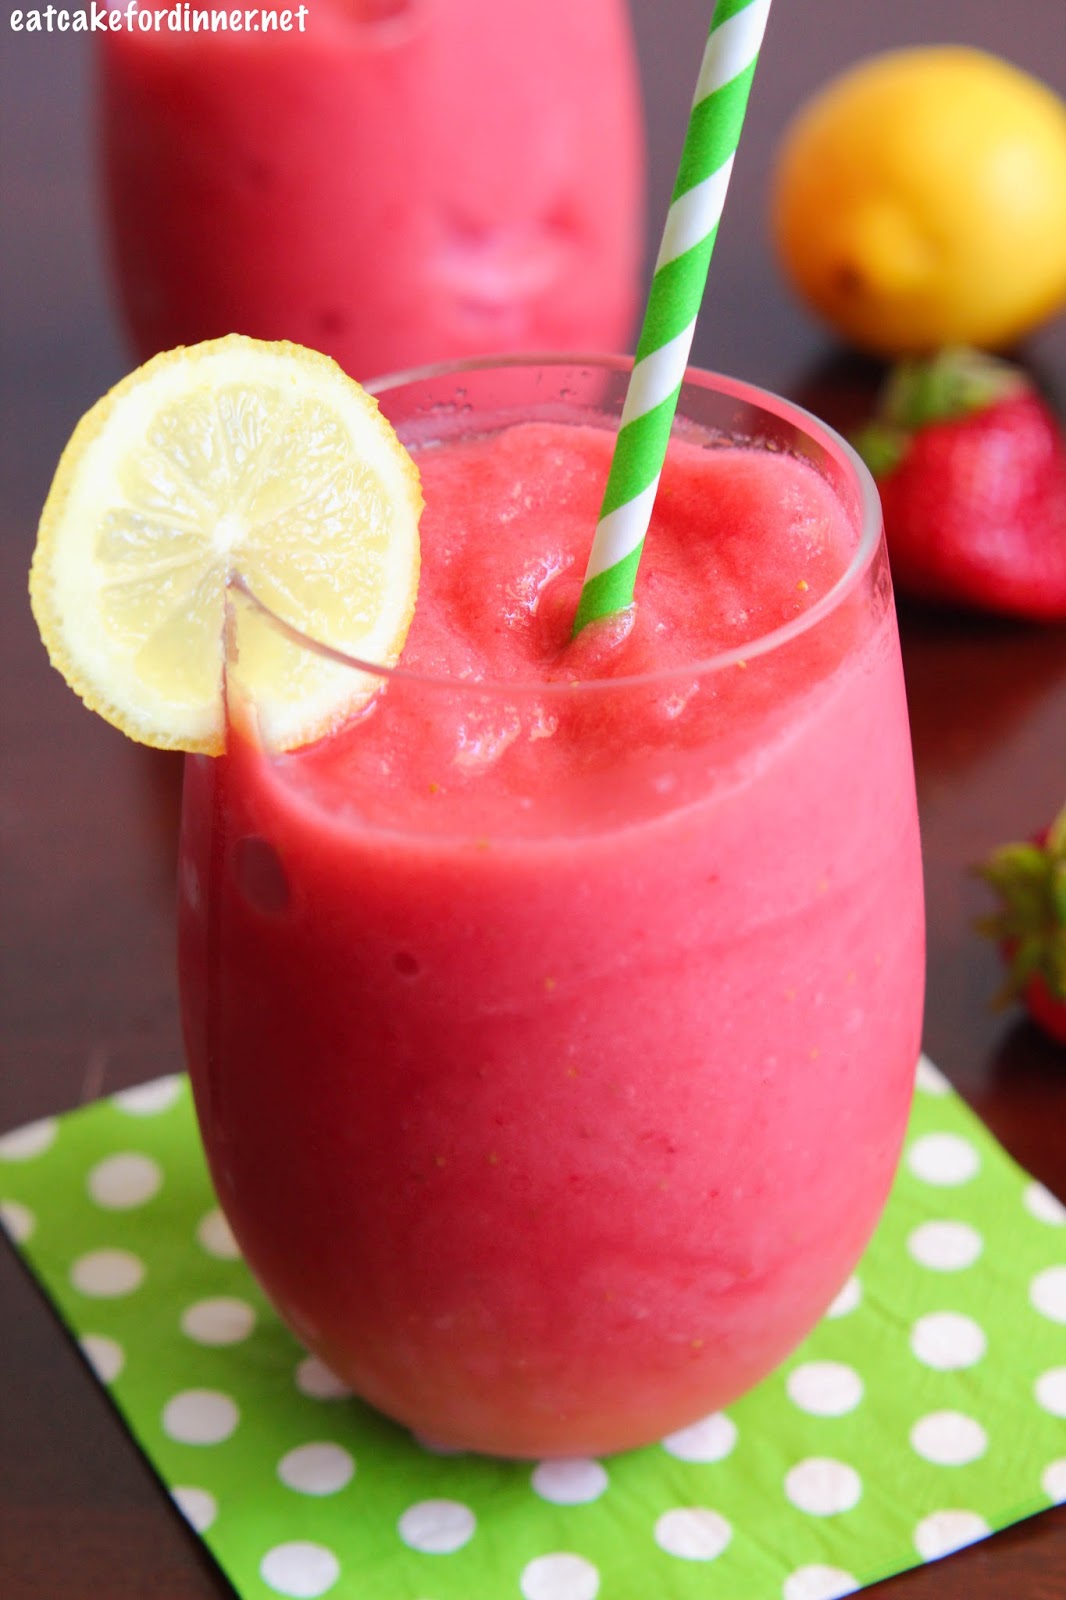 Frozen Strawberry Watermelon Lemonade | Eat Cake For Dinner | Bloglovin’